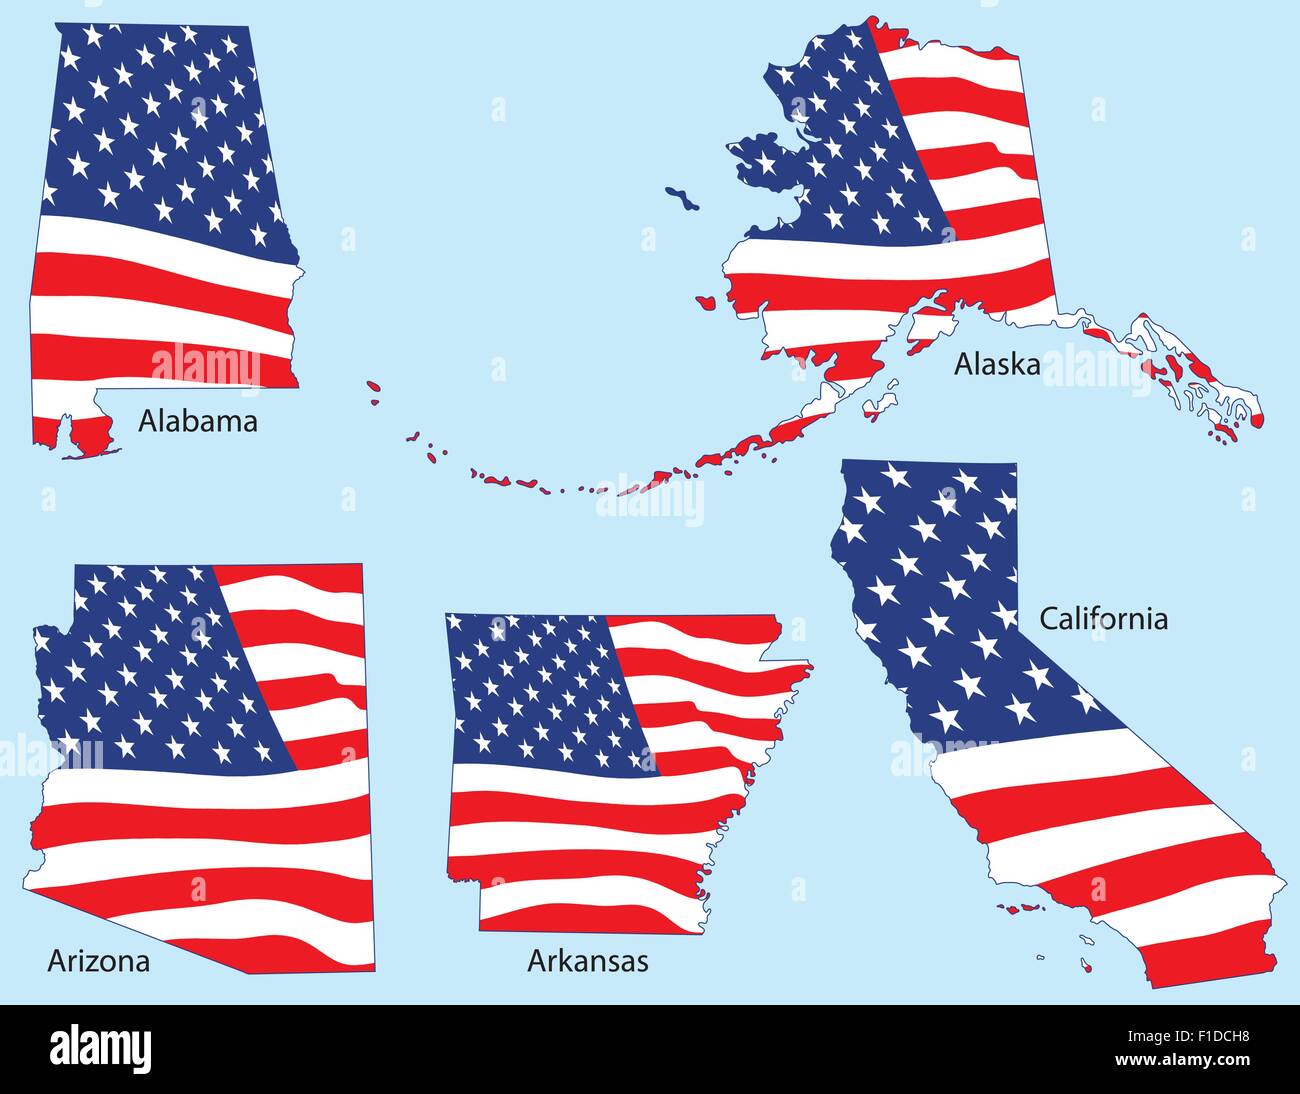 Alabama, Alaska, Arizona, l'Arkansas et la Californie décrit avec drapeaux, chaque regroupées individuellement Illustration de Vecteur